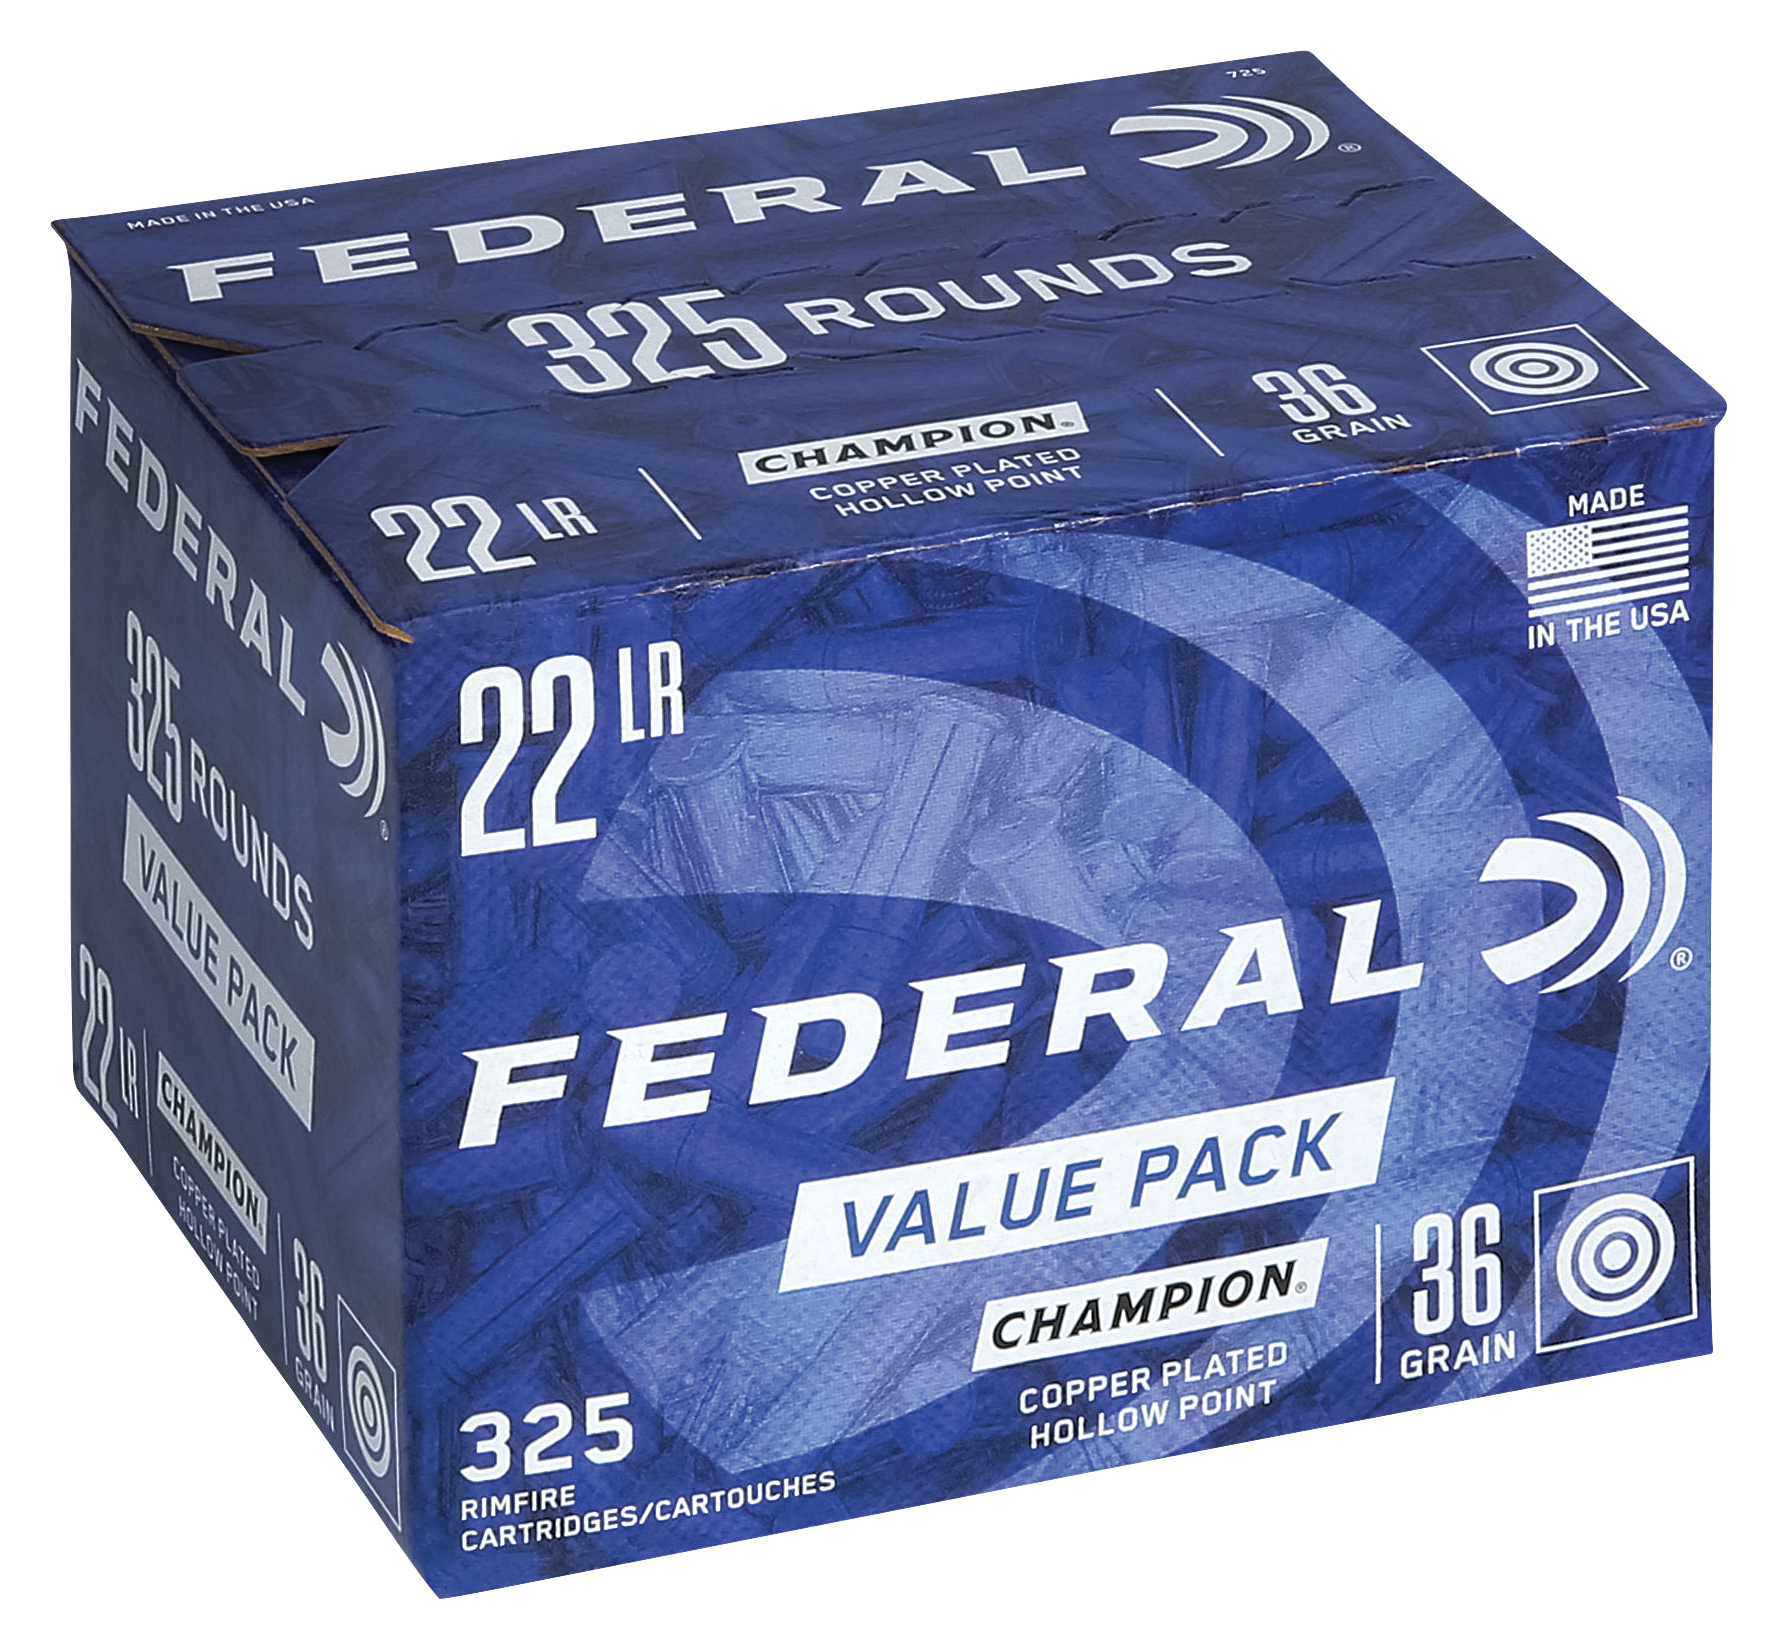 Federal .22 LR Value Pack